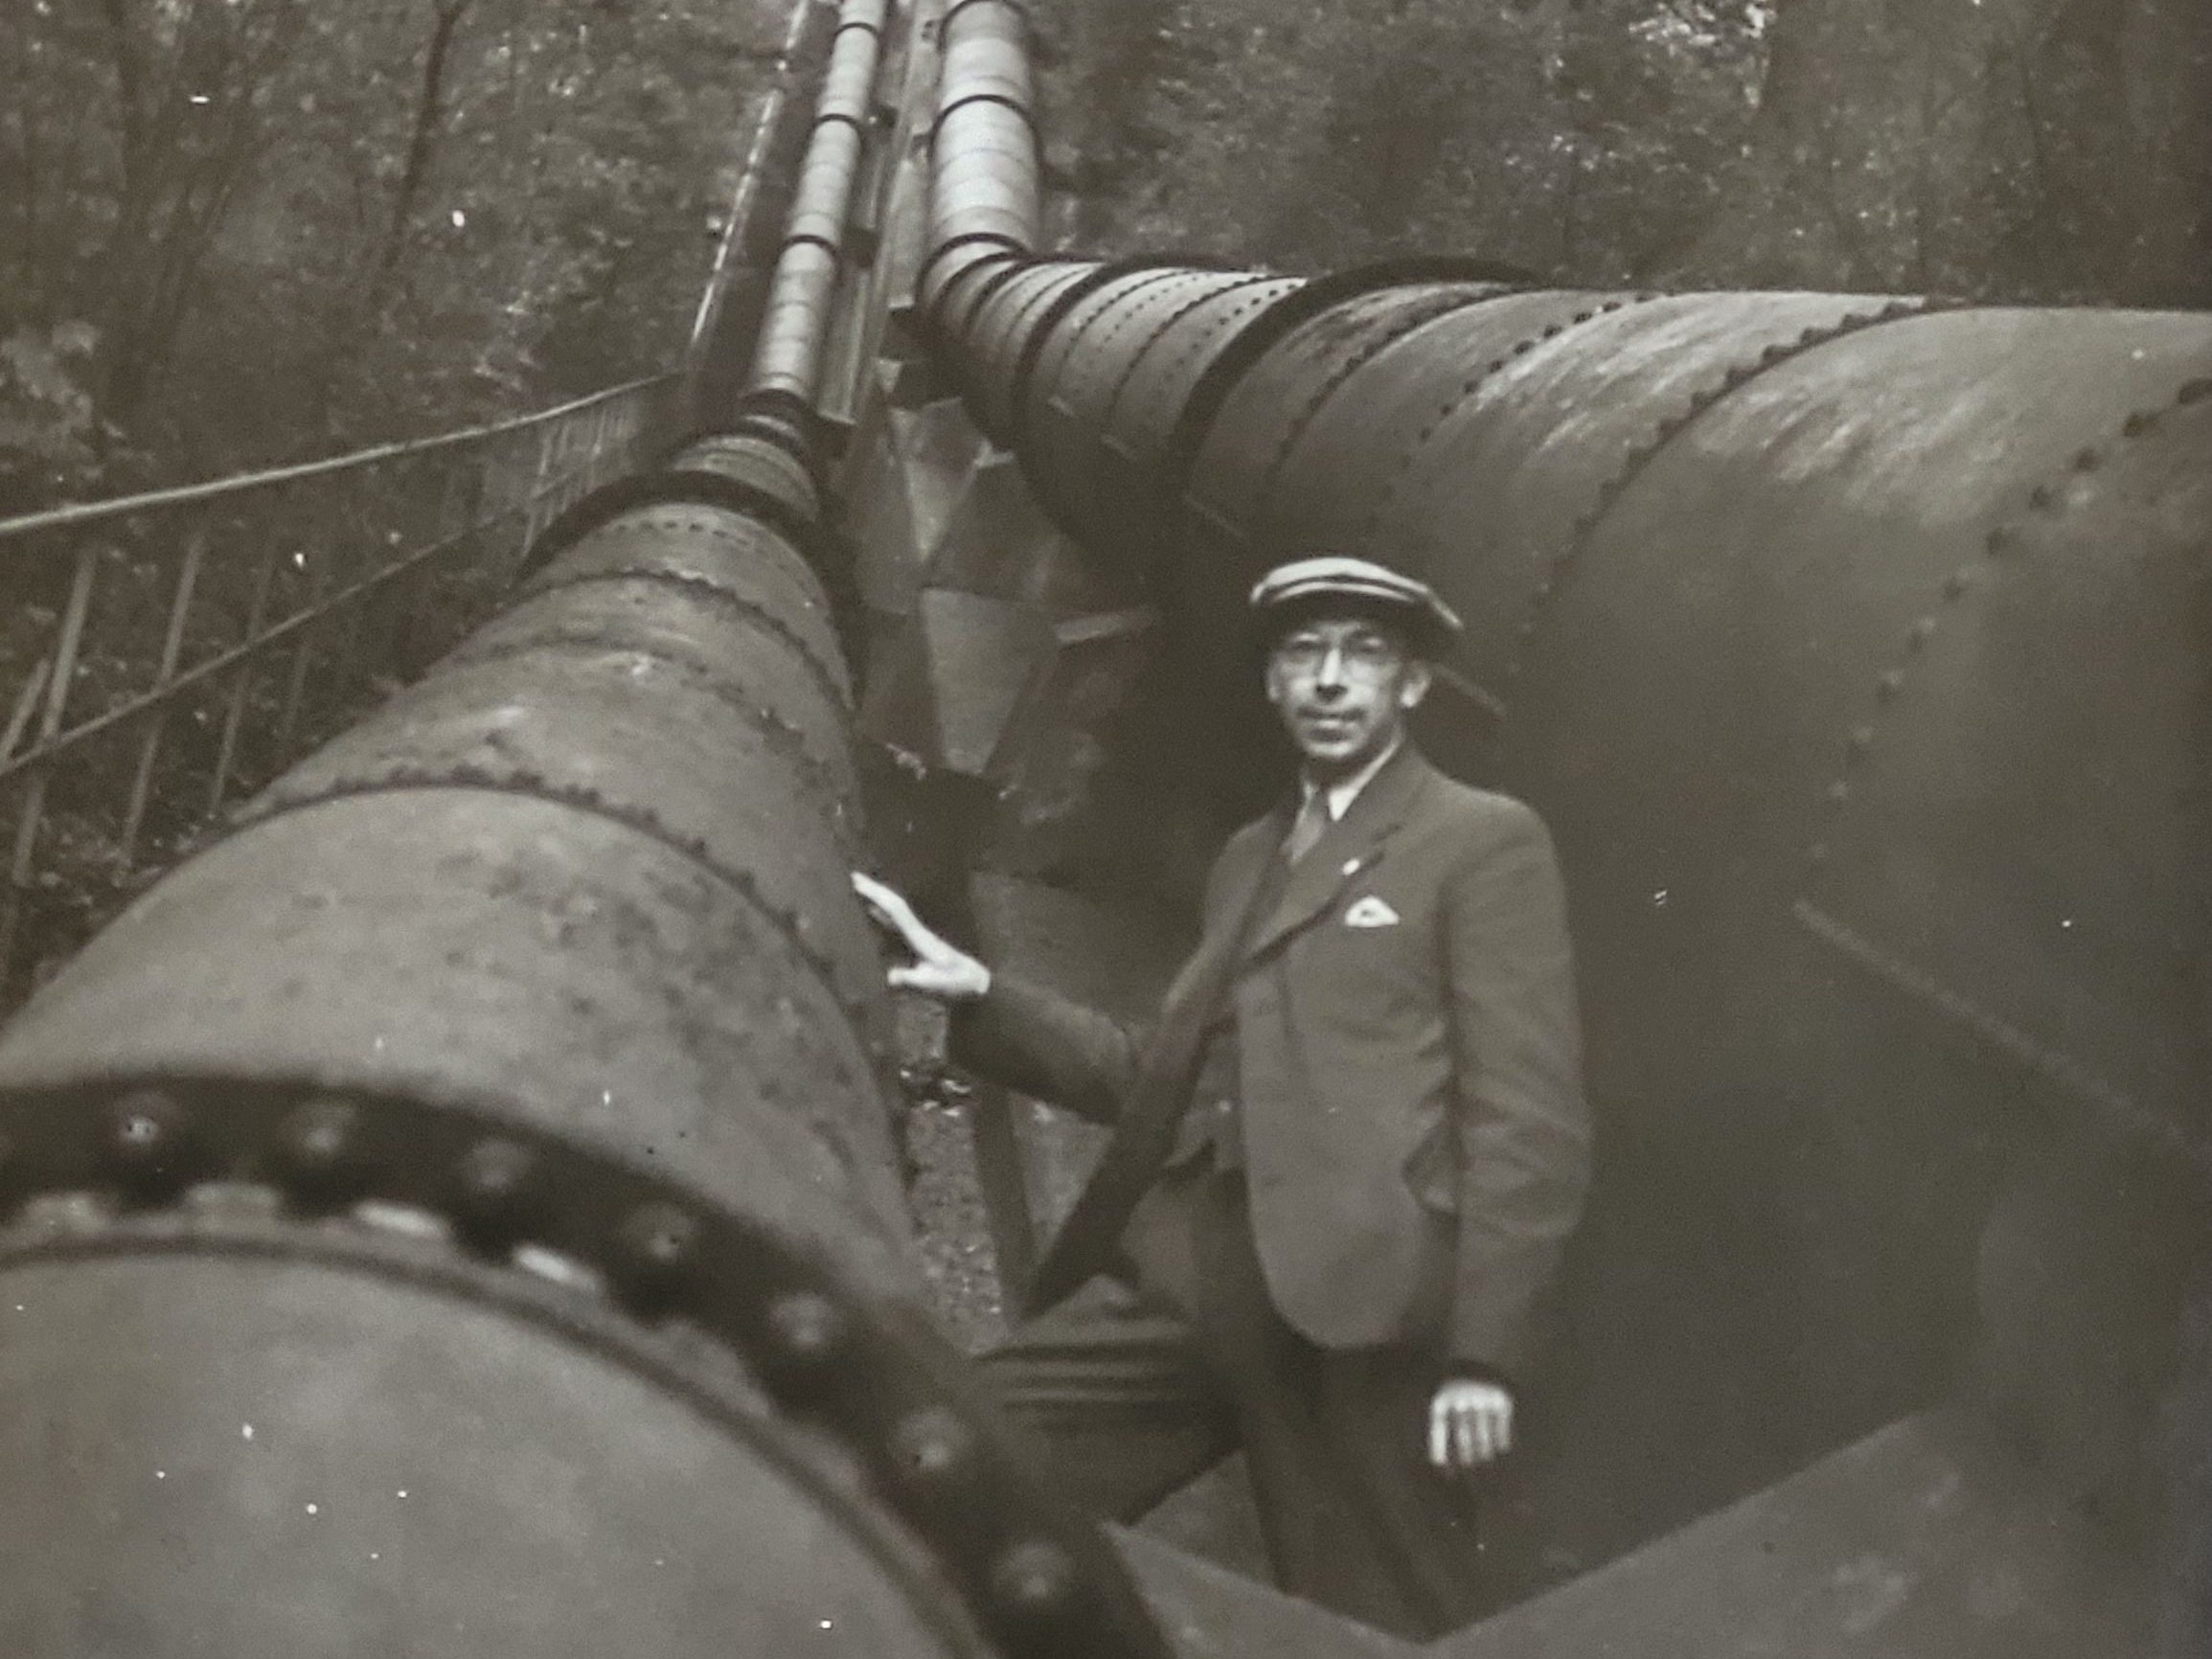 Schwarz-weiß-Foto aus den 1920er Jahren: Junger Mann mit Schiebermütze steht zwischen großen und sehr dicken Rohren - vermutlich Wasserleitungen.